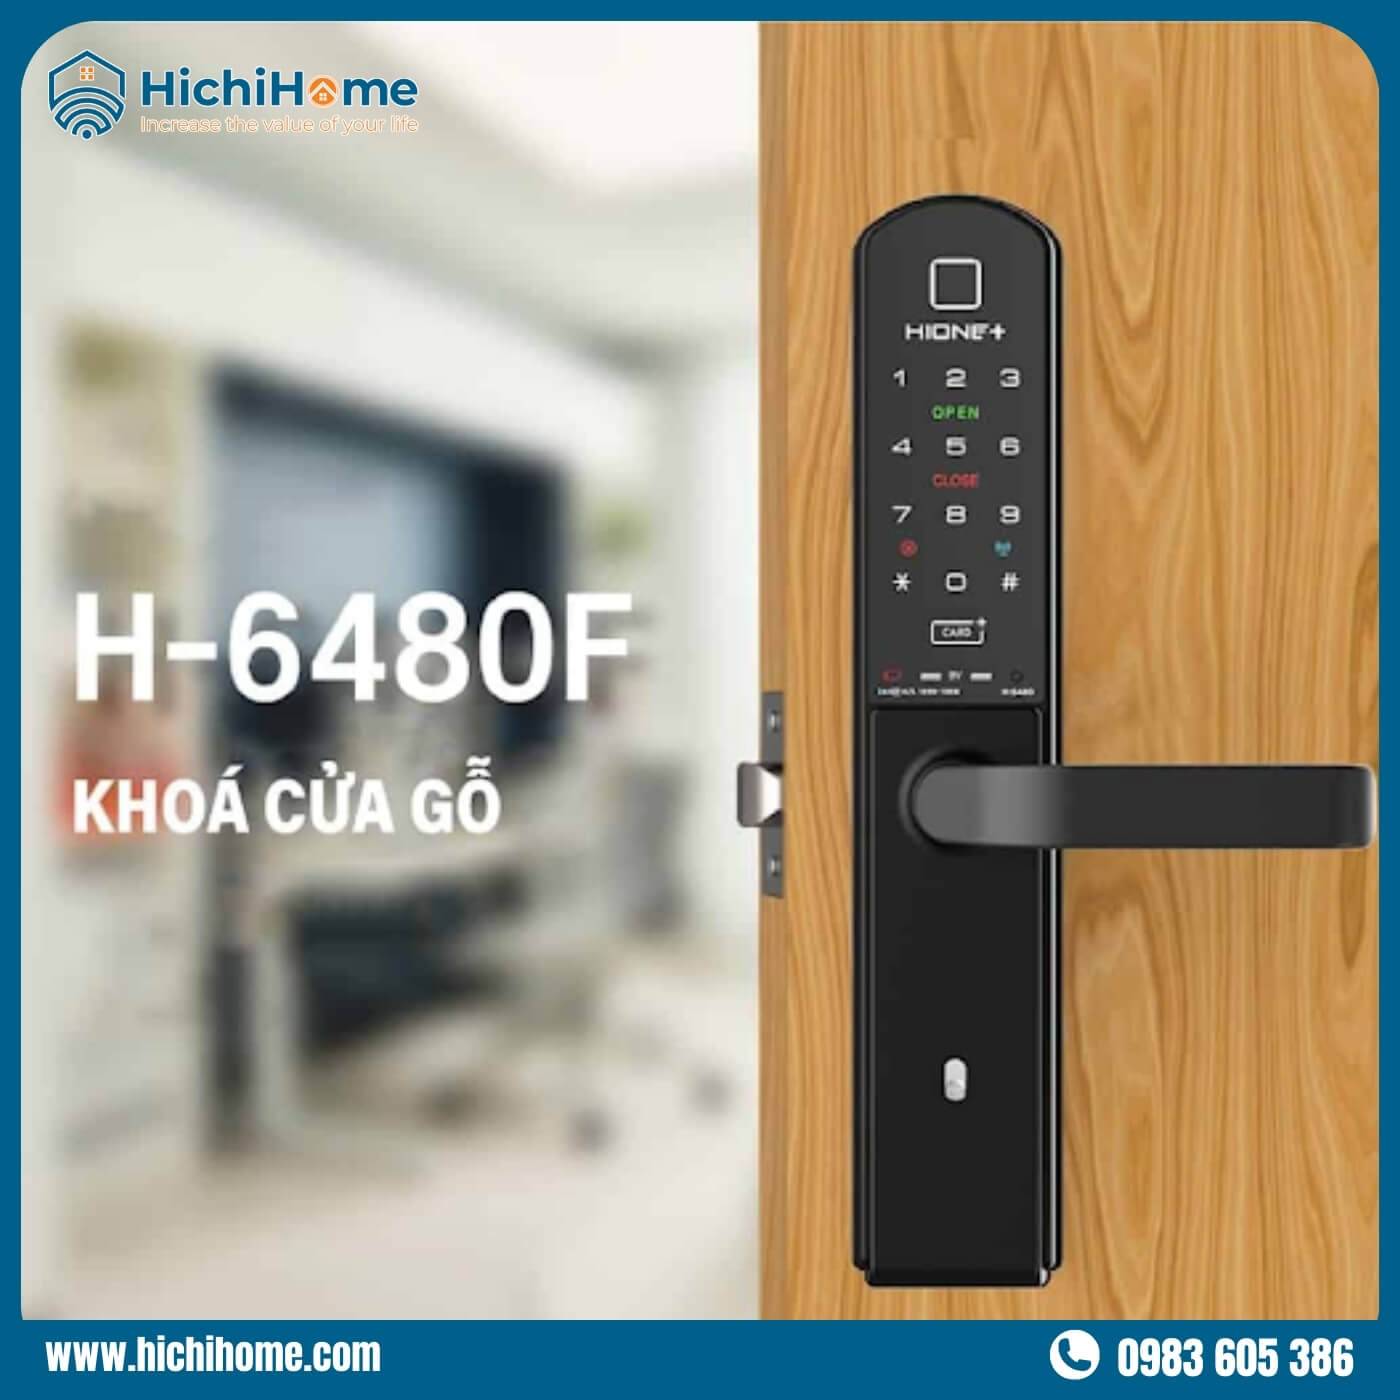 Hione H-6480F phù hợp khi lắp vào các cánh cửa gỗ sang trọng